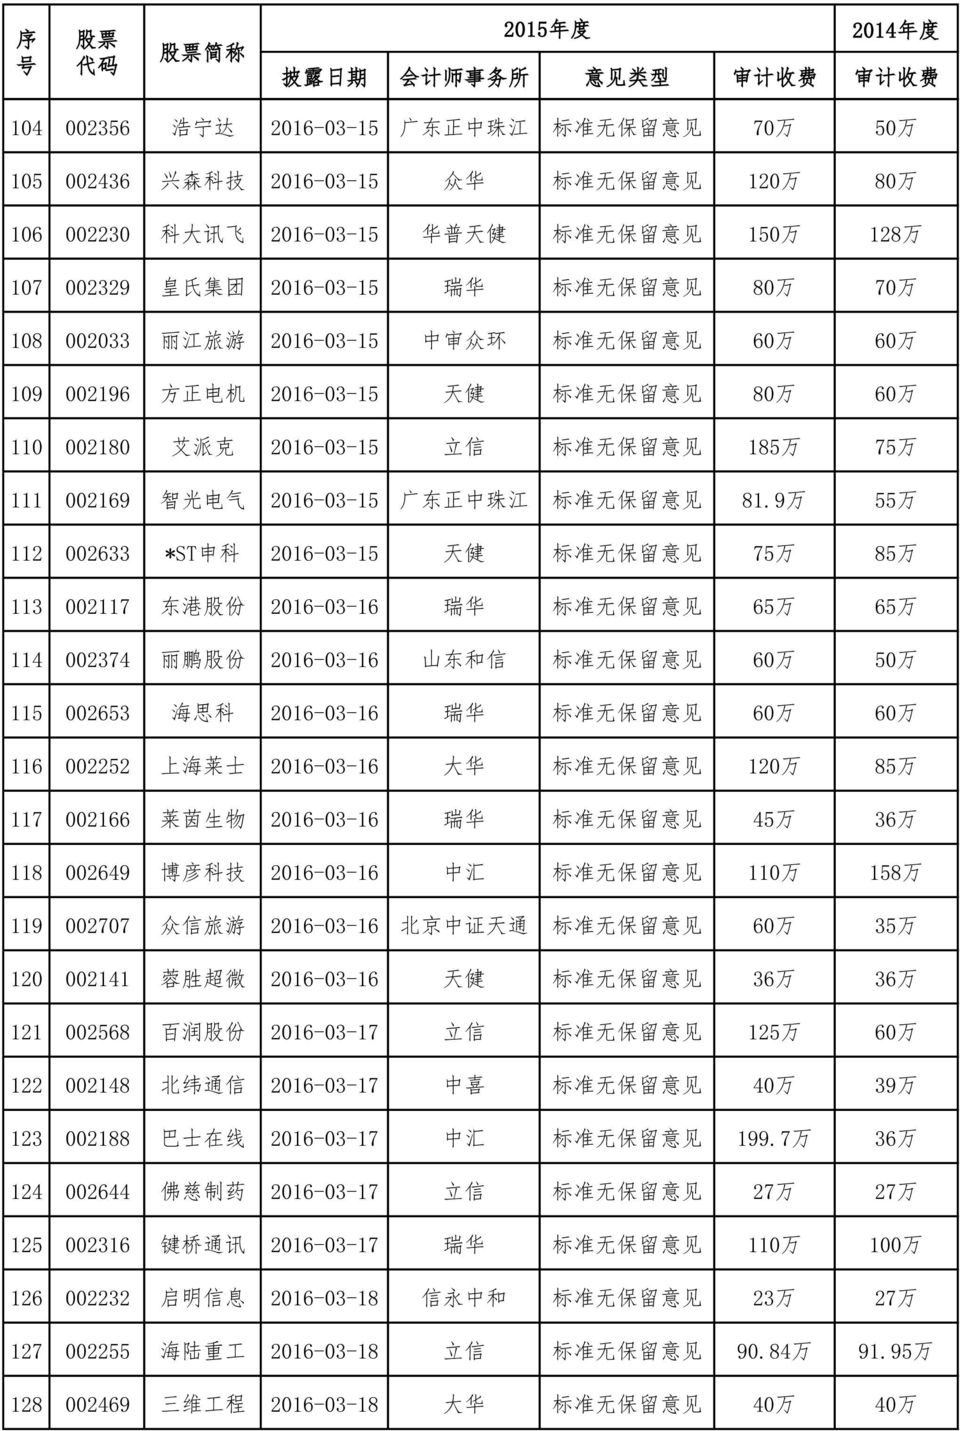 准 无 保 留 意 见 185 万 75 万 111 002169 智 光 电 气 2016-03-15 广 东 正 中 珠 江 标 准 无 保 留 意 见 81.